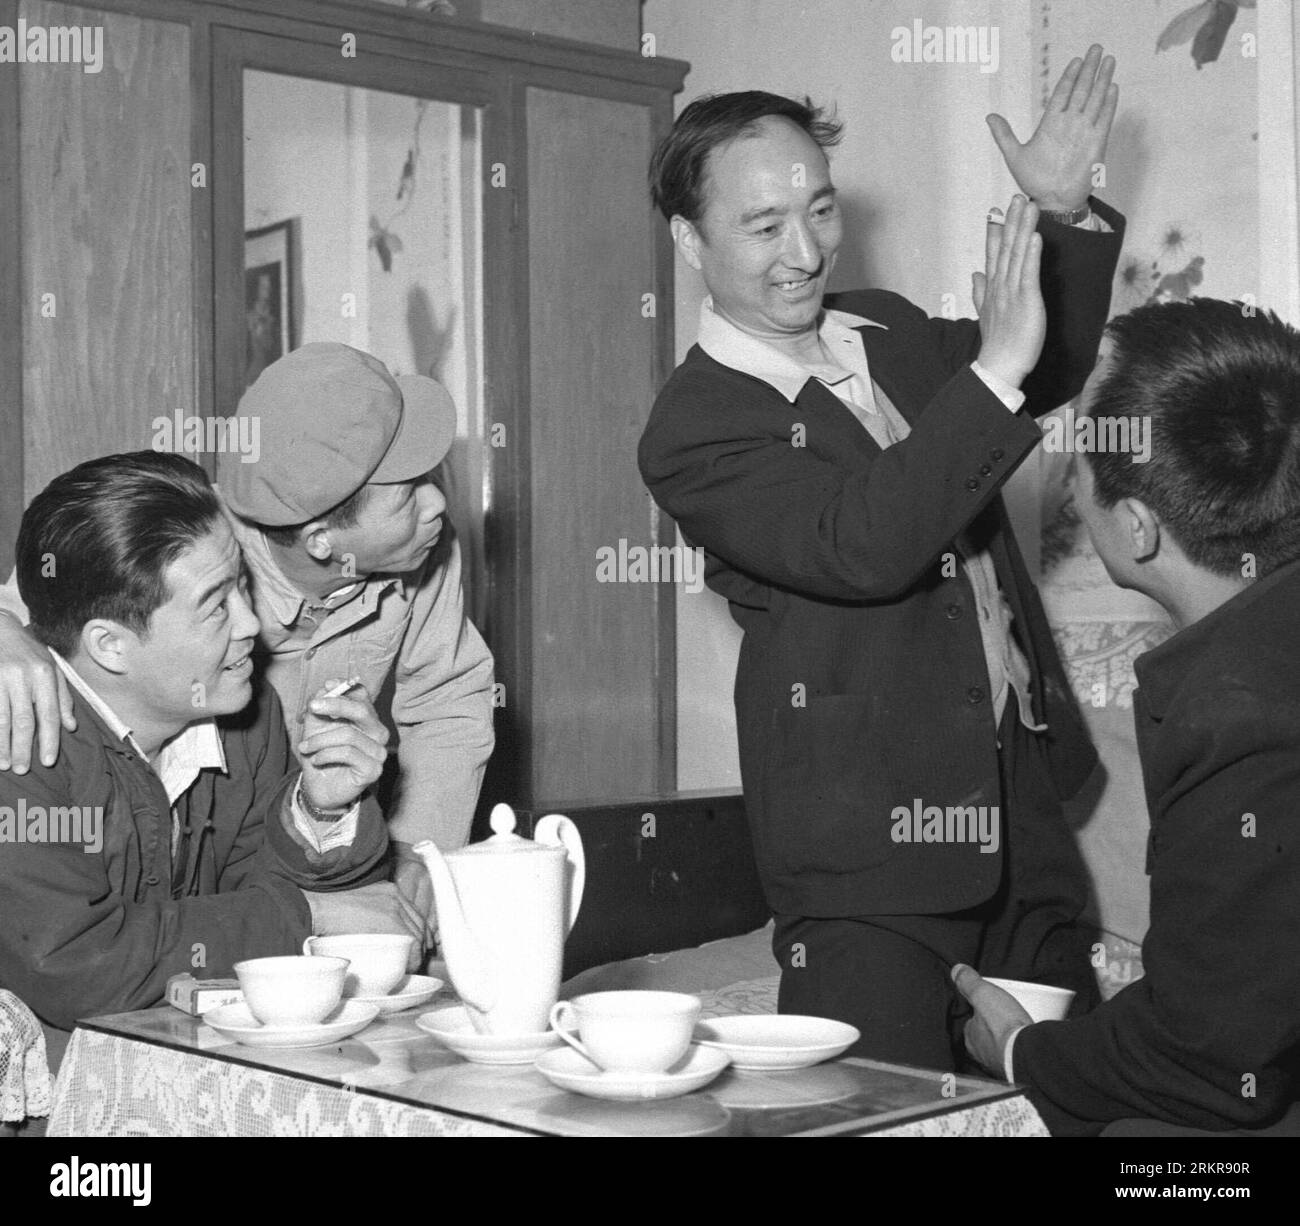 Bildnummer: 58154717 Datum: 27.06.1968 Copyright: Imago/Xinhua (120627) -- BEIJING, 27 de junio de 2012 (Xinhua) -- Foto de archivo sin fecha muestra al reconocido actor chino Chen Qiang (2º R) discutiendo las artes escénicas con otros actores. Chen Qiang falleció a la edad de 94 años en Beijing, capital de China, el 26 de junio de 2012. (Xinhua) (llp) CHINA-BEIJING-CHEN QIANG-DEATH (CN) PUBLICATIONxNOTxINxCHN Gente Kultur Película xbs x2x 1968 cuadrante !AUFNAHMEDATUM GESCHÄTZT! 58154717 Fecha 27 06 1968 Copyright Imago XINHUA Beijing Junio 27 2012 XINHUA Archivo sin fecha Foto muestra el renombrado actor chino Chen Qiang 2º r Foto de stock